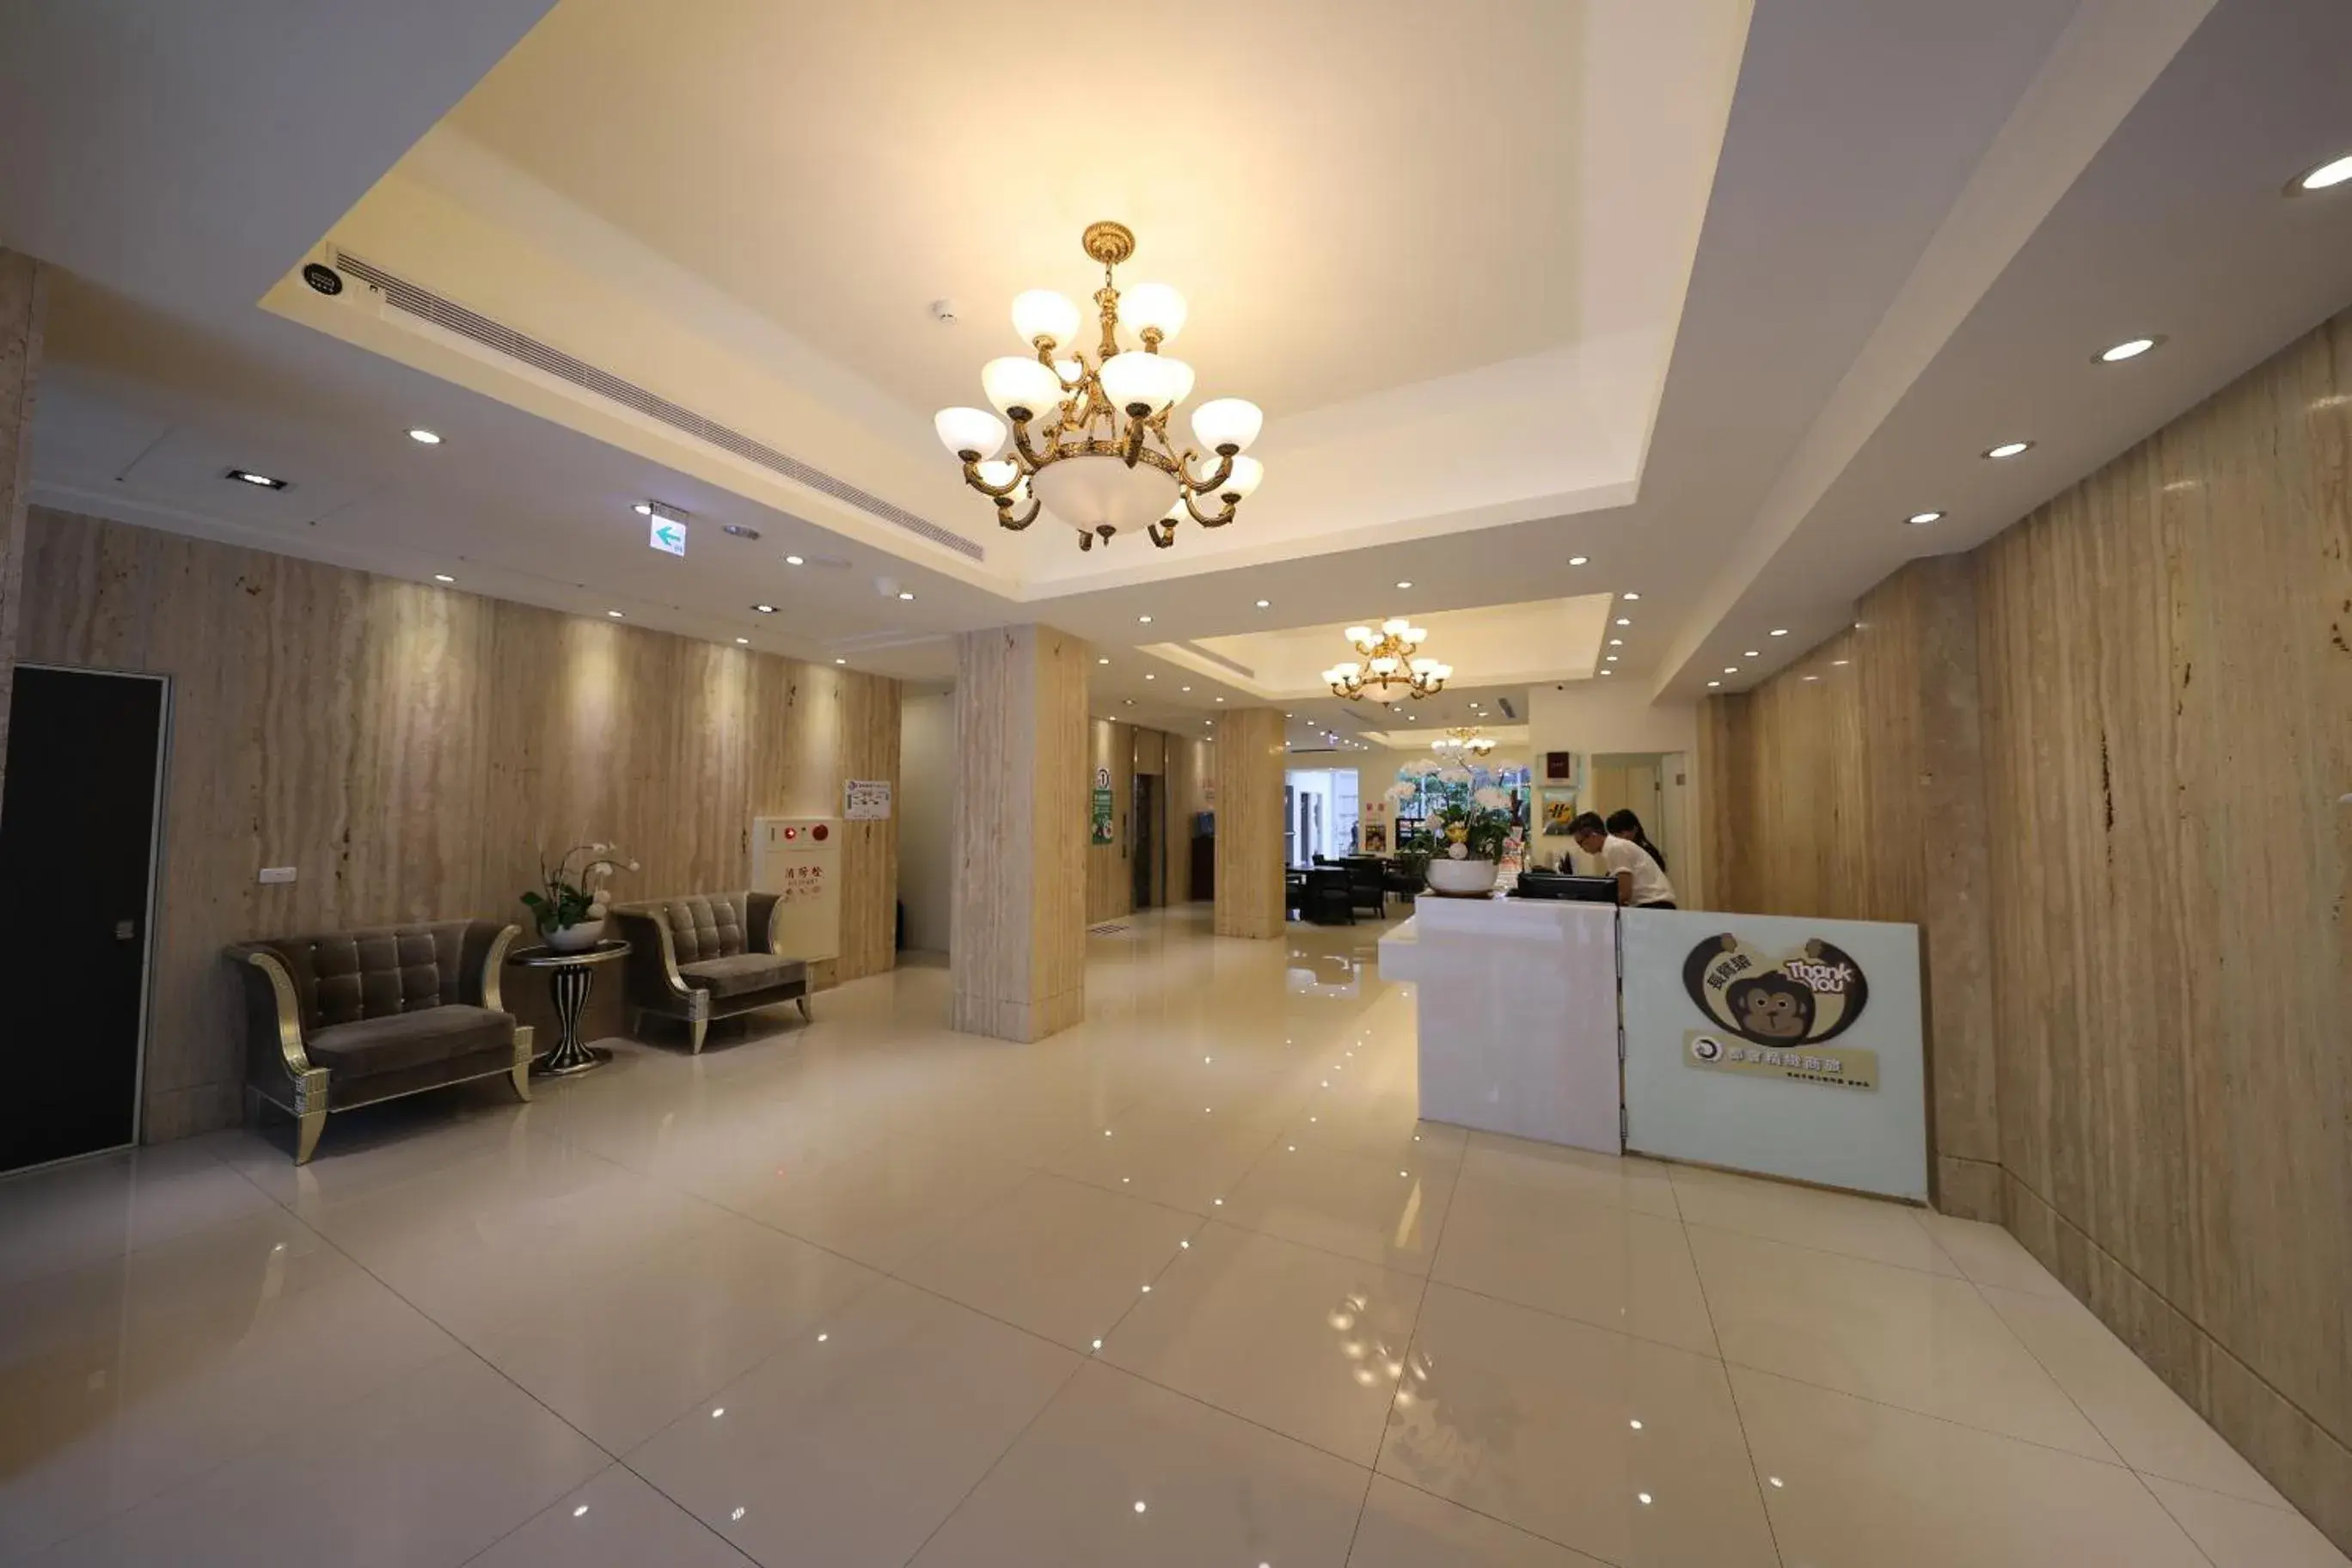 Lobby or reception, Lobby/Reception in M Hotel